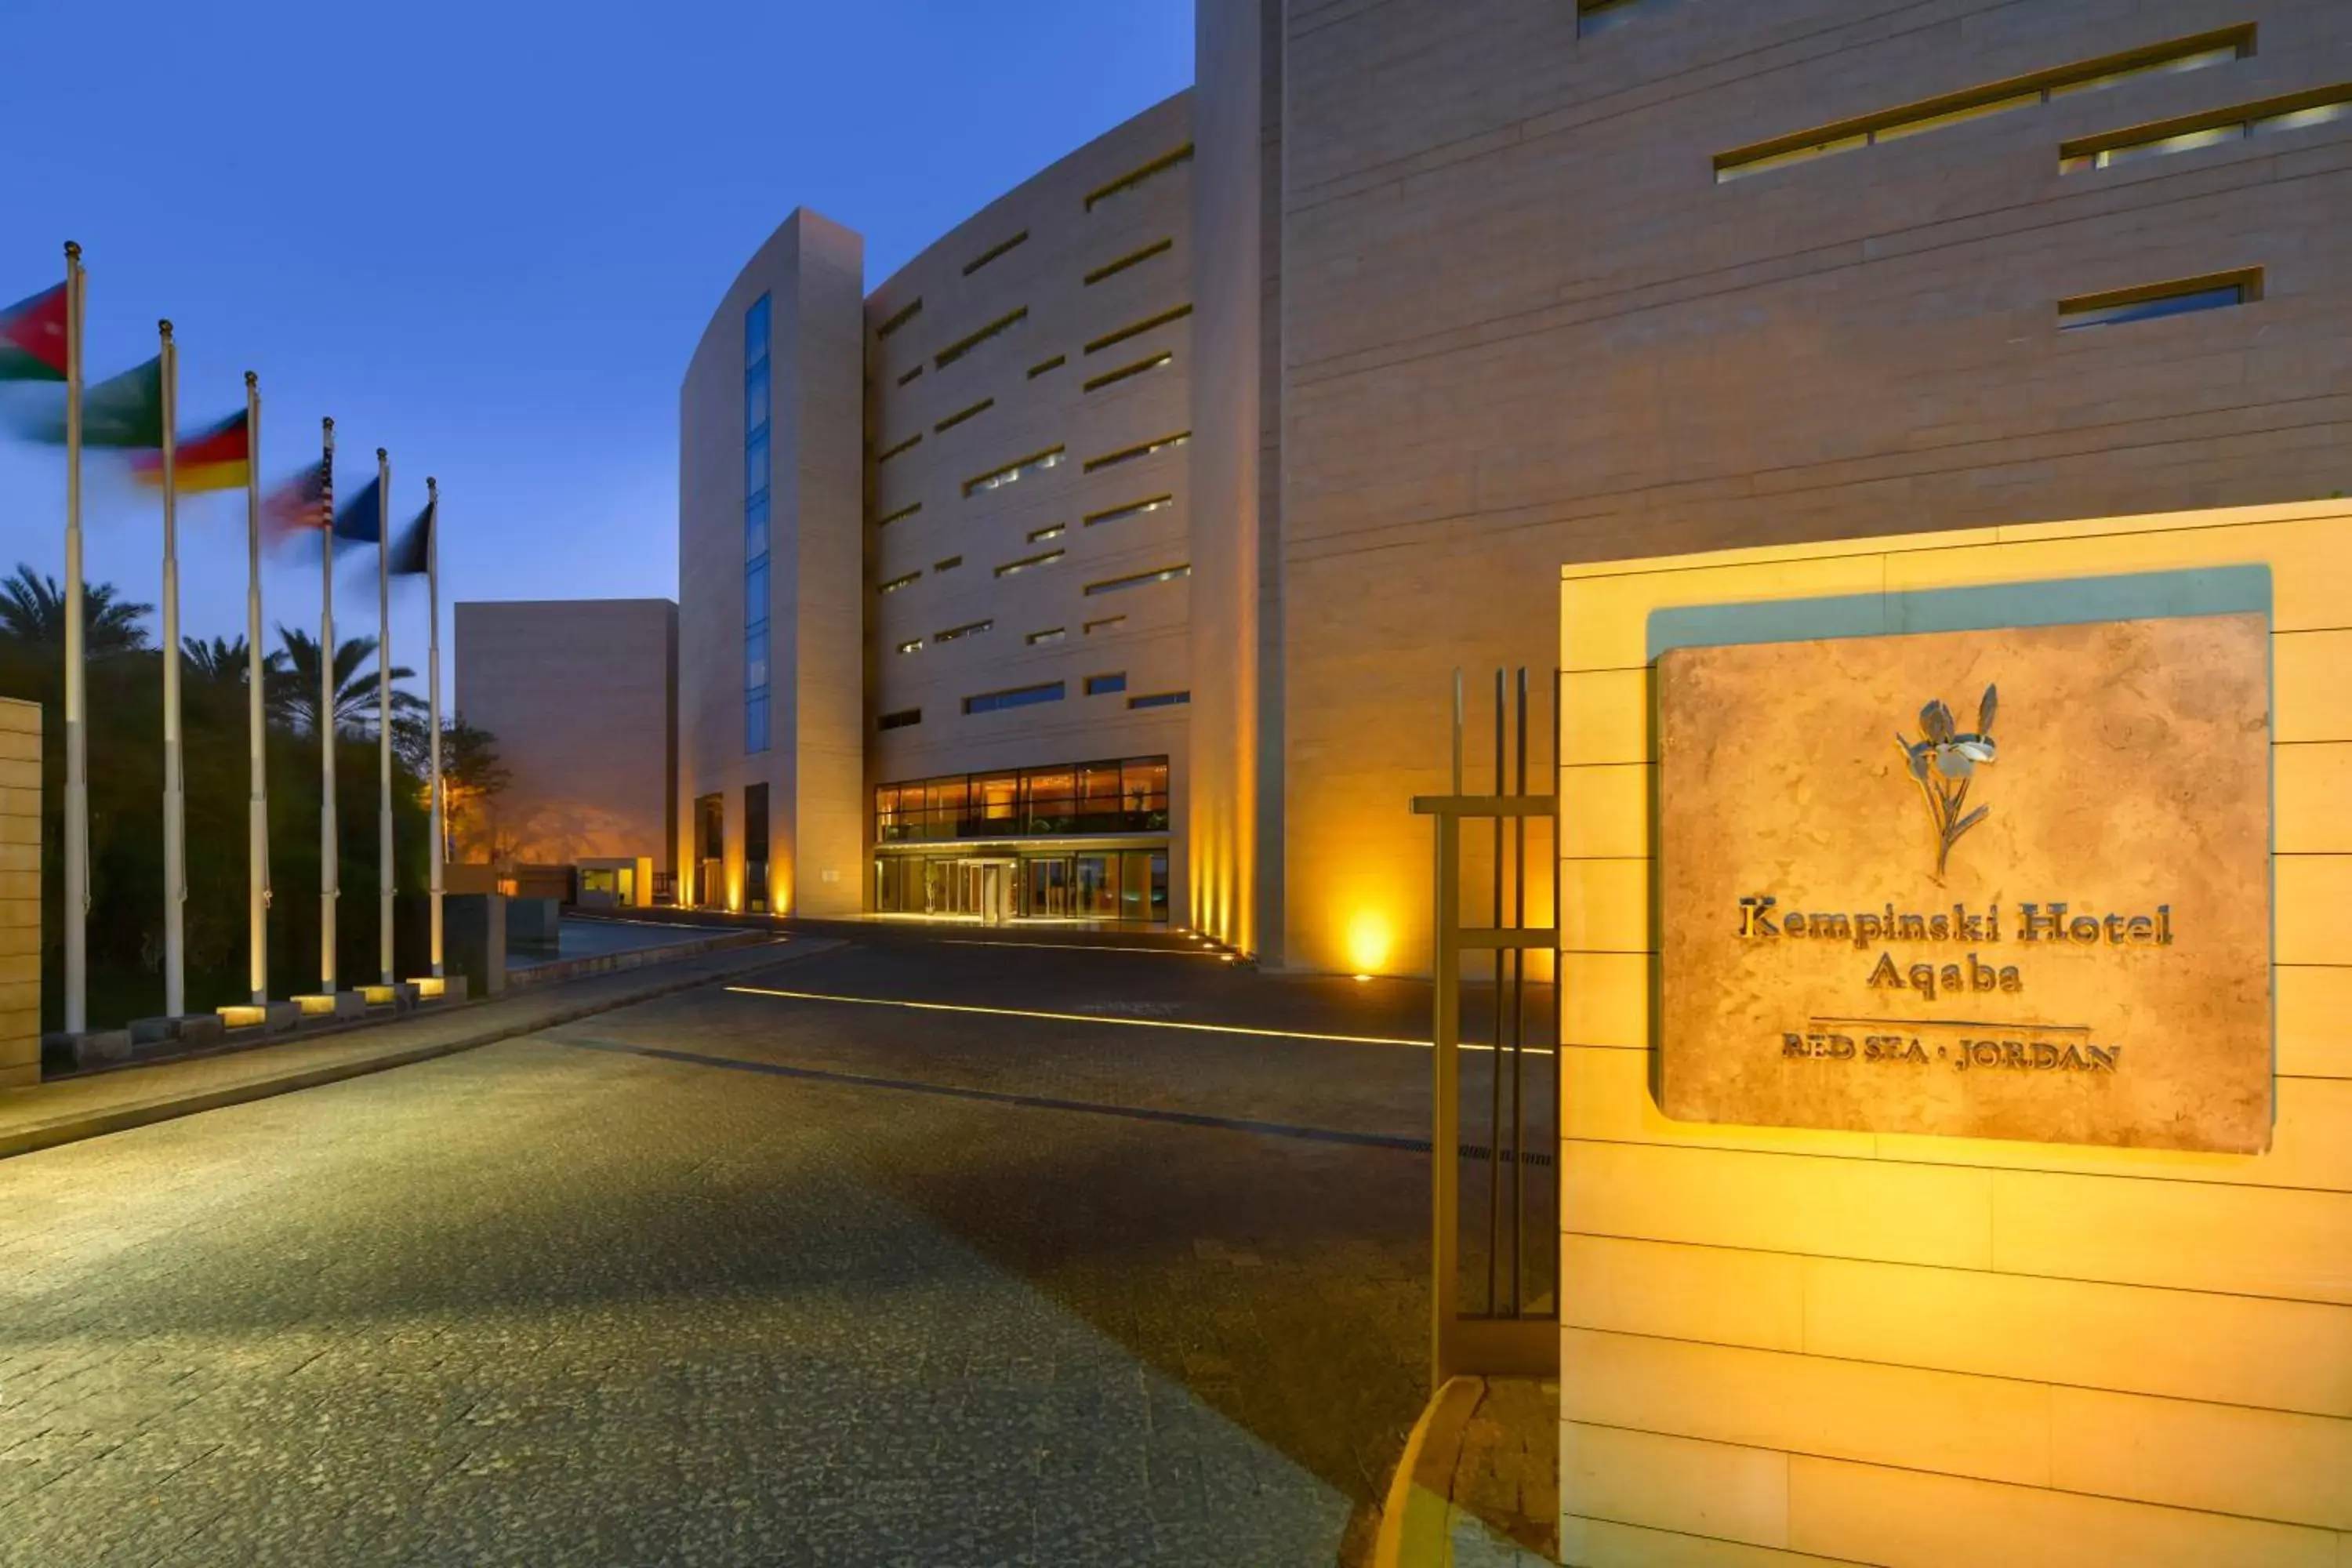 Property Building in Kempinski Hotel Aqaba